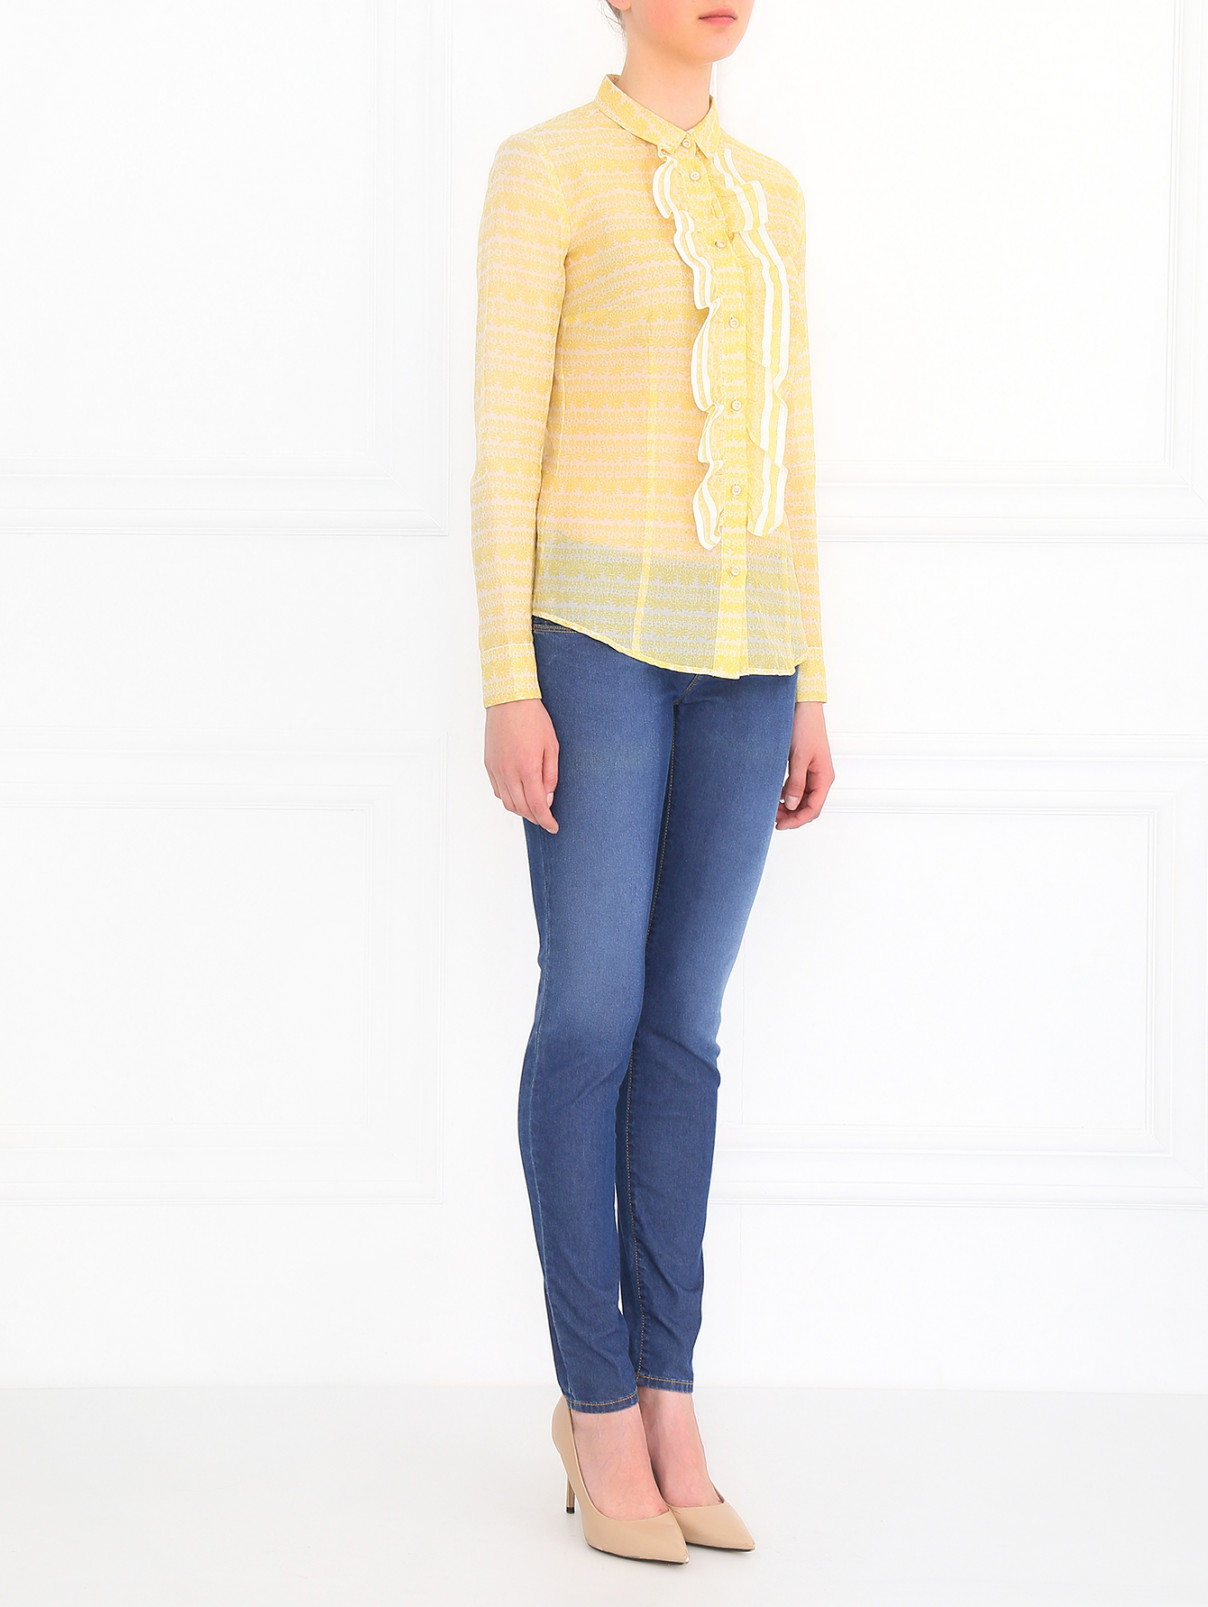 Блуза из хлопка с декоративной рюшью Red Valentino  –  Модель Общий вид  – Цвет:  Желтый